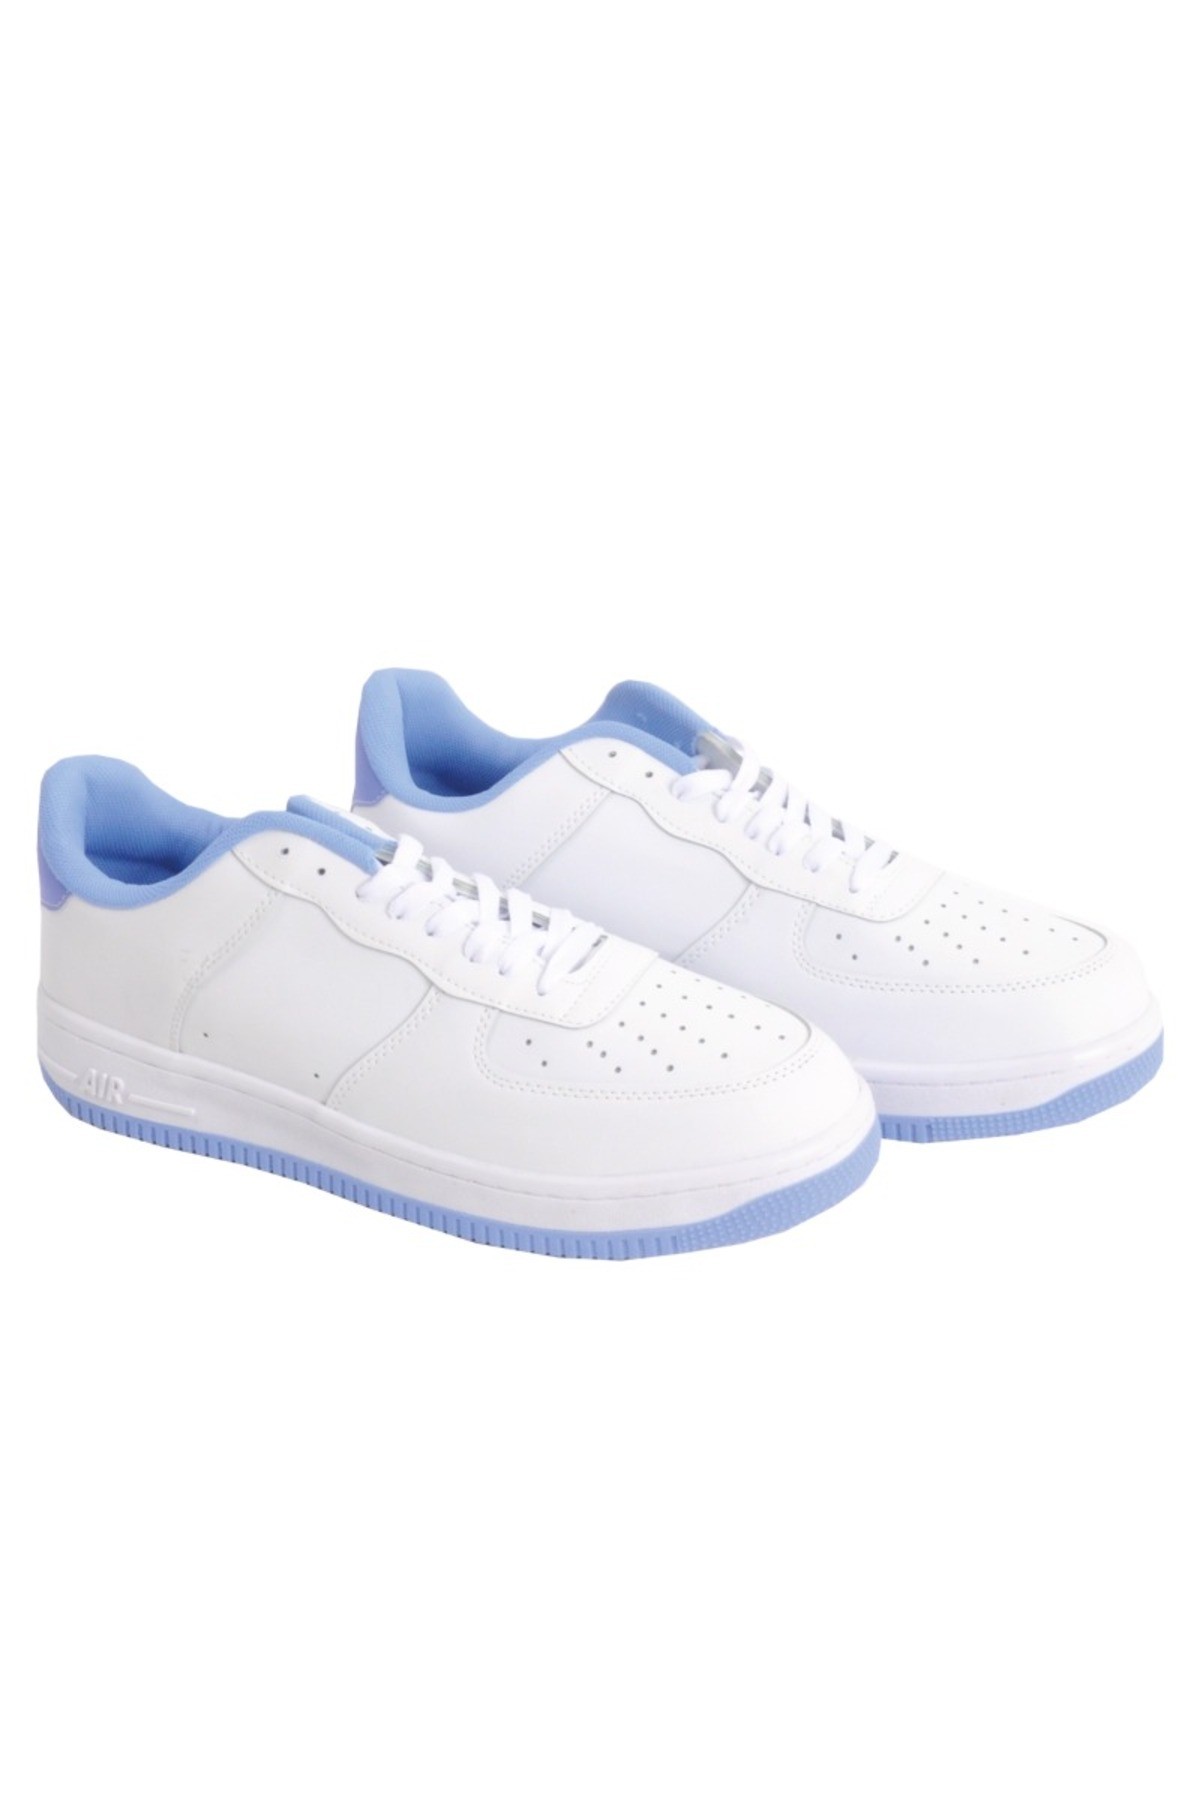 Büyük Numara Ayakkabı AIR SKIN 5027 Beyaz - beyaz-mavi